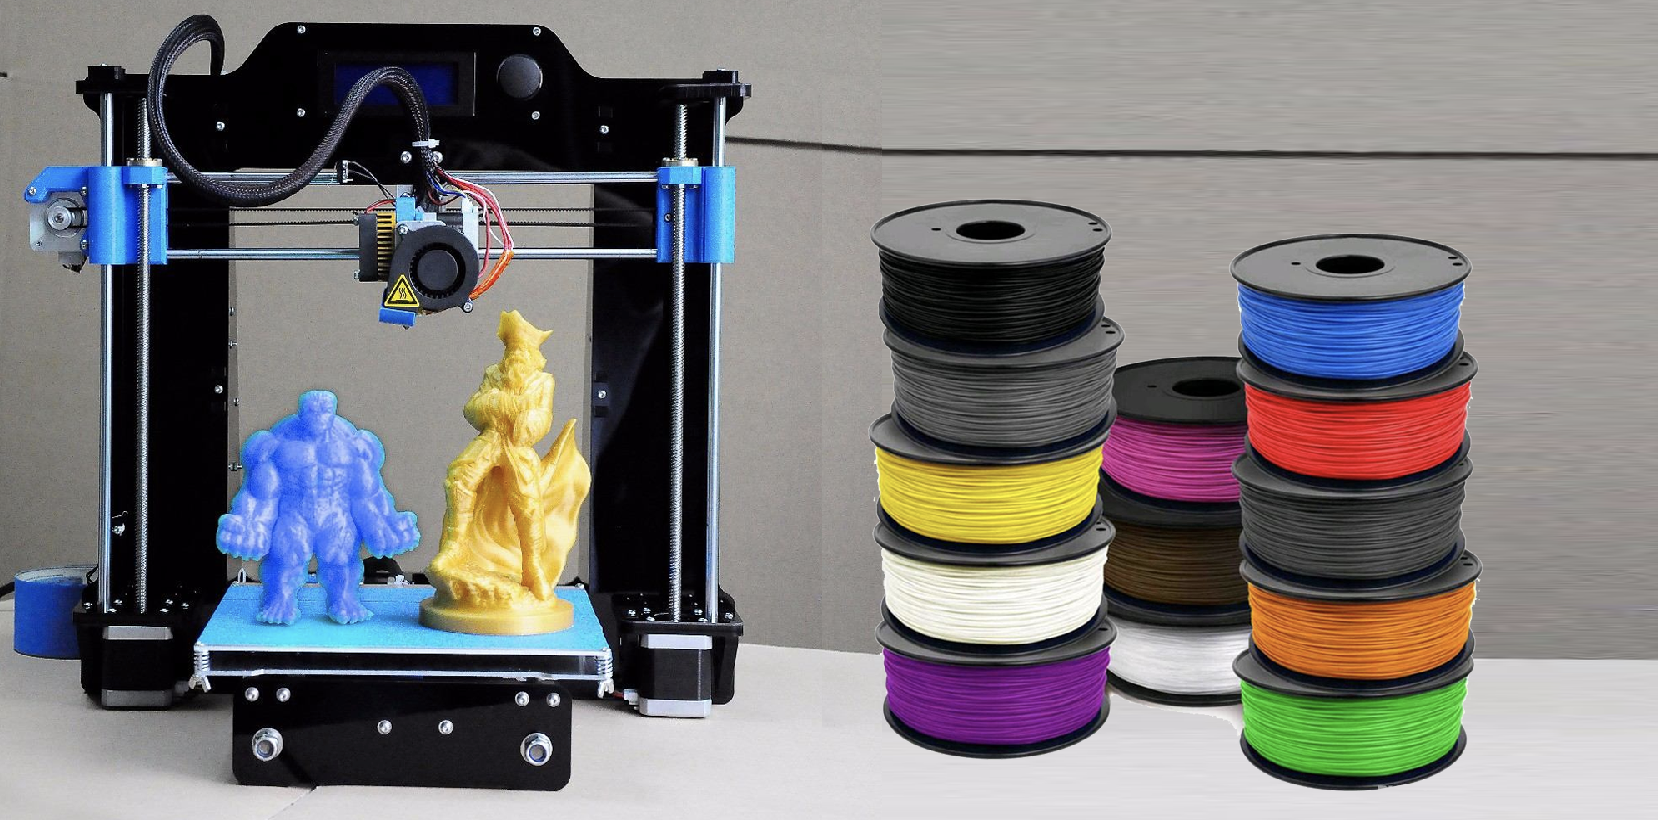 Patria Traducción Tranquilidad Elige el Filamento correcto para tu impresora 3D - Visión Digital